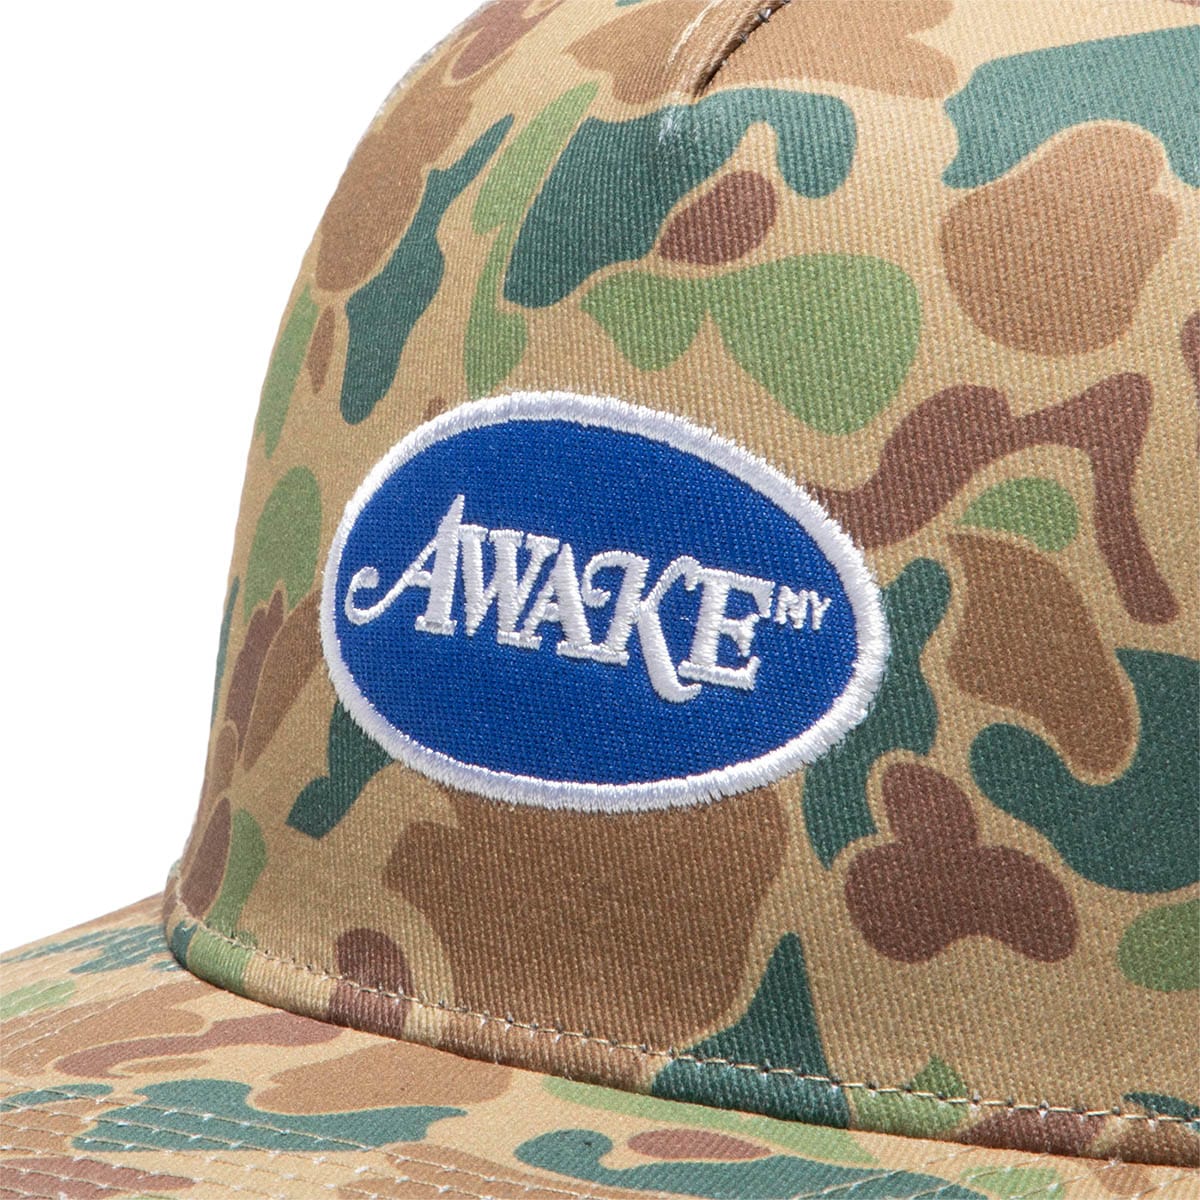 Awake NY Headwear DUCK CAMO / O/S CLASSIC LOGO TRUCKER HAT